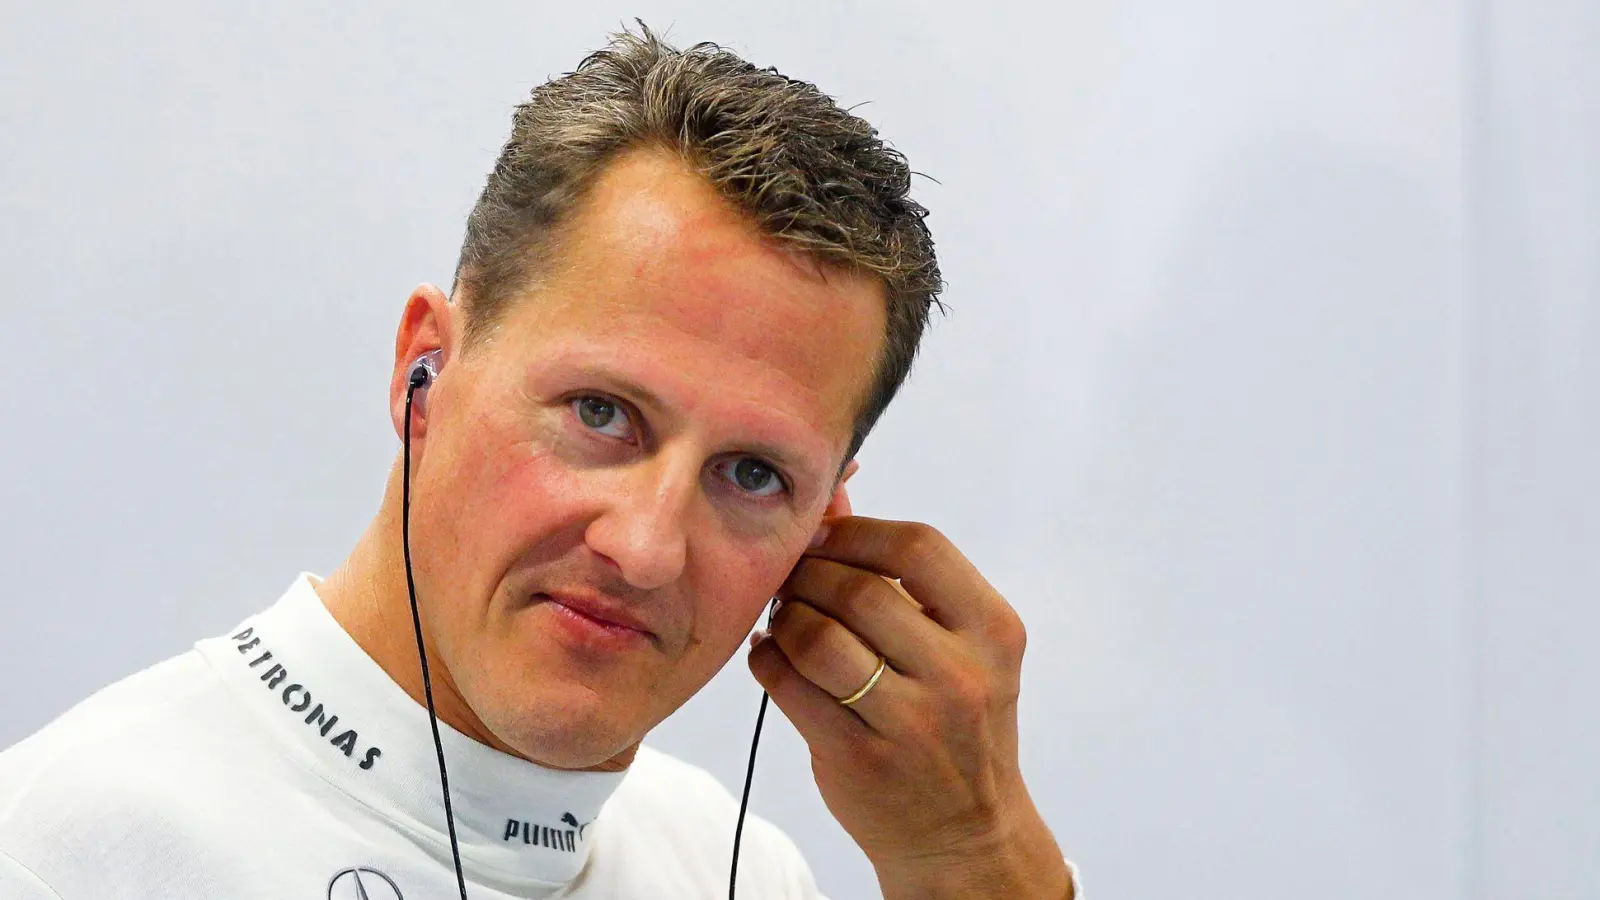 Die Familie von Ex-Rennfahrer Michael Schumacher ist Opfer von mutßmaßlichen Erpressern geworden. (Foto: Diego Azubel/epa/dpa)